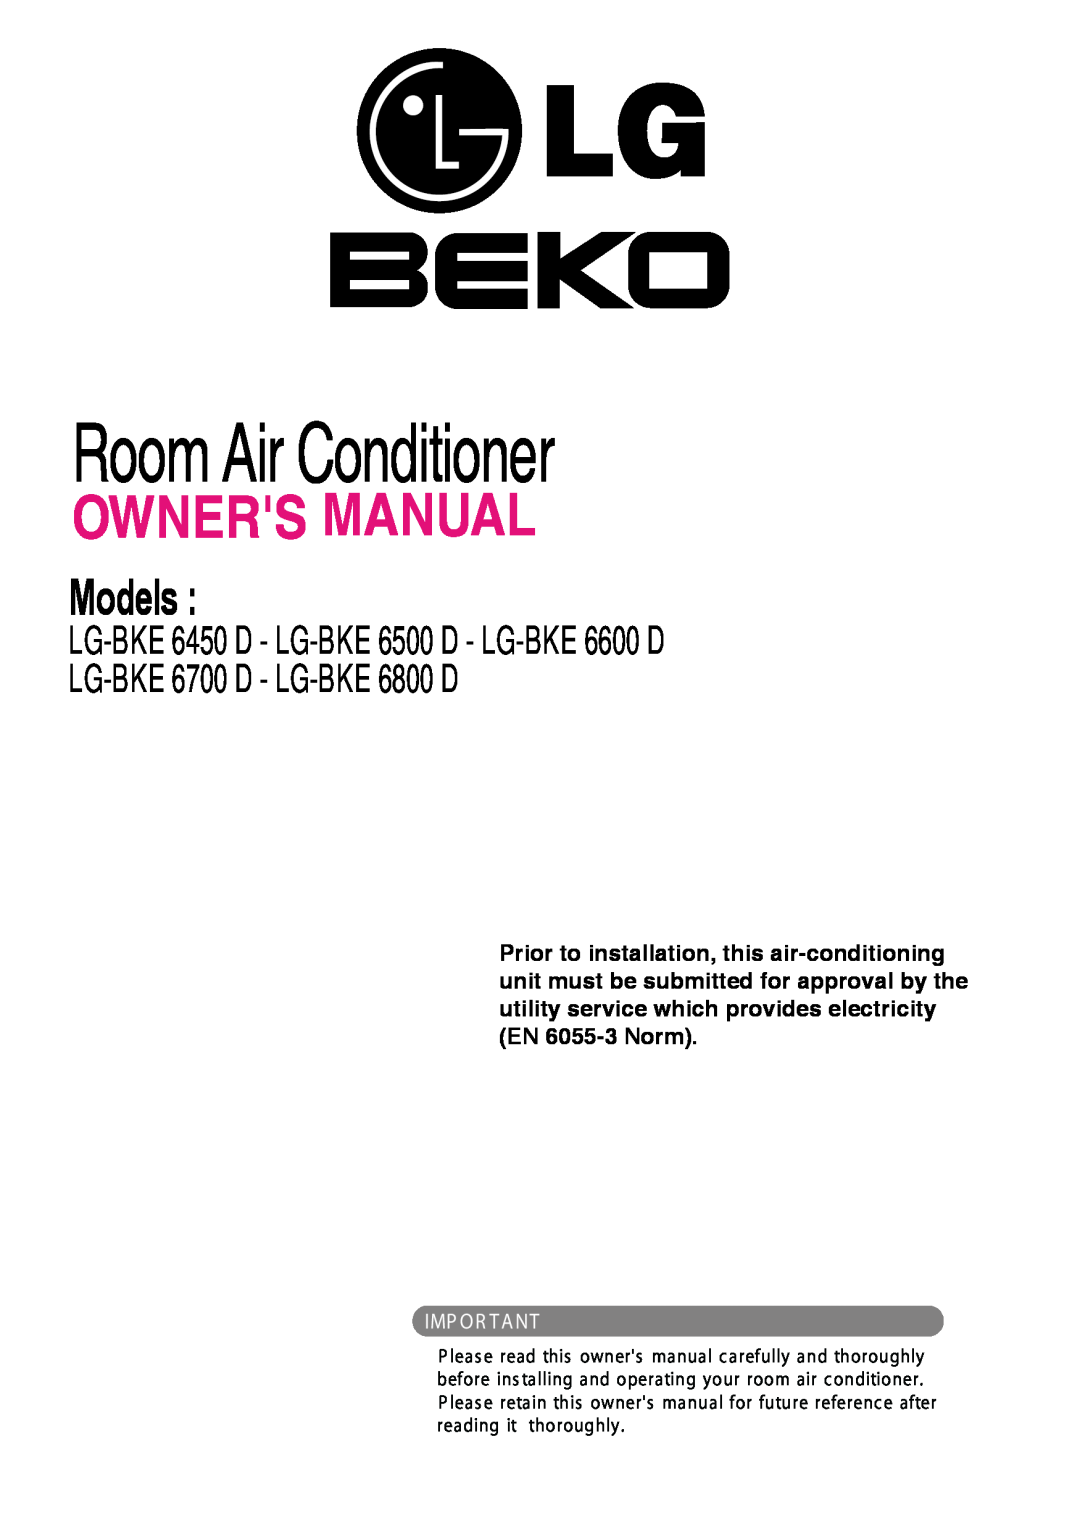 Beko LG-BKE 6700 D, LG-BKE 6800 D owner manual Room Air Conditioner, Models, LG-BKE6450 D - LG-BKE6500 D - LG-BKE6600 D 